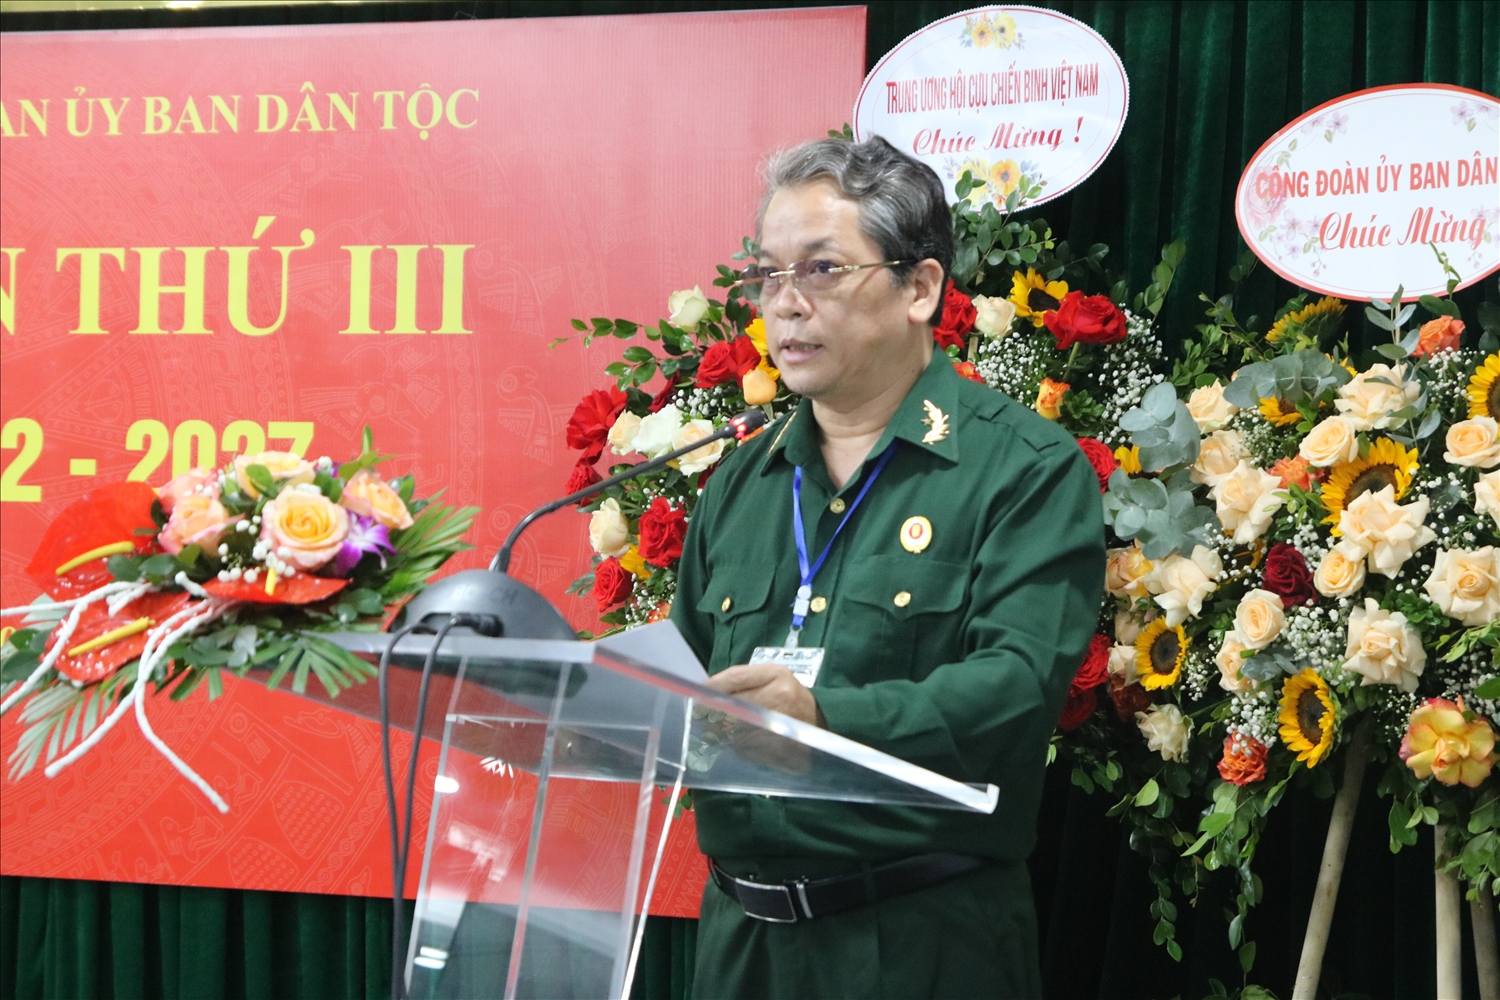 Đồng chí Phạm Thúc Thủy, Phó Vụ trưởng Vụ Tổ chức cán bộ, Chủ tịch Hội CCB phát biểu tại Đại hội 